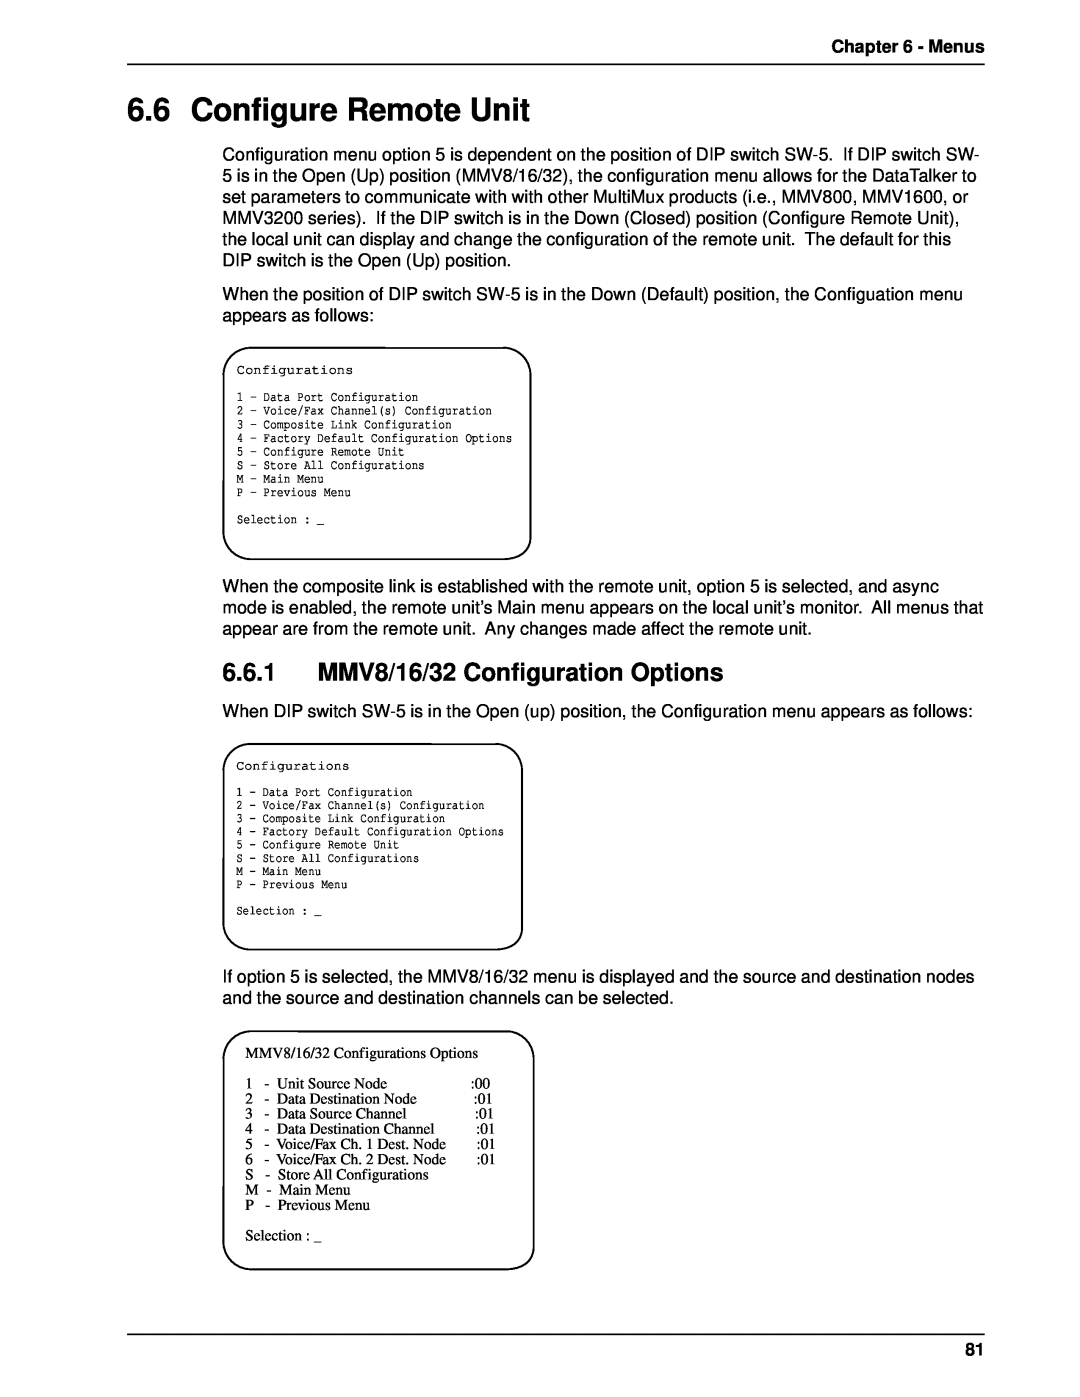 Multi-Tech Systems DT101/xx, DT102/xx Configure Remote Unit, 6.6.1 MMV8/16/32 Configuration Options, Menus 